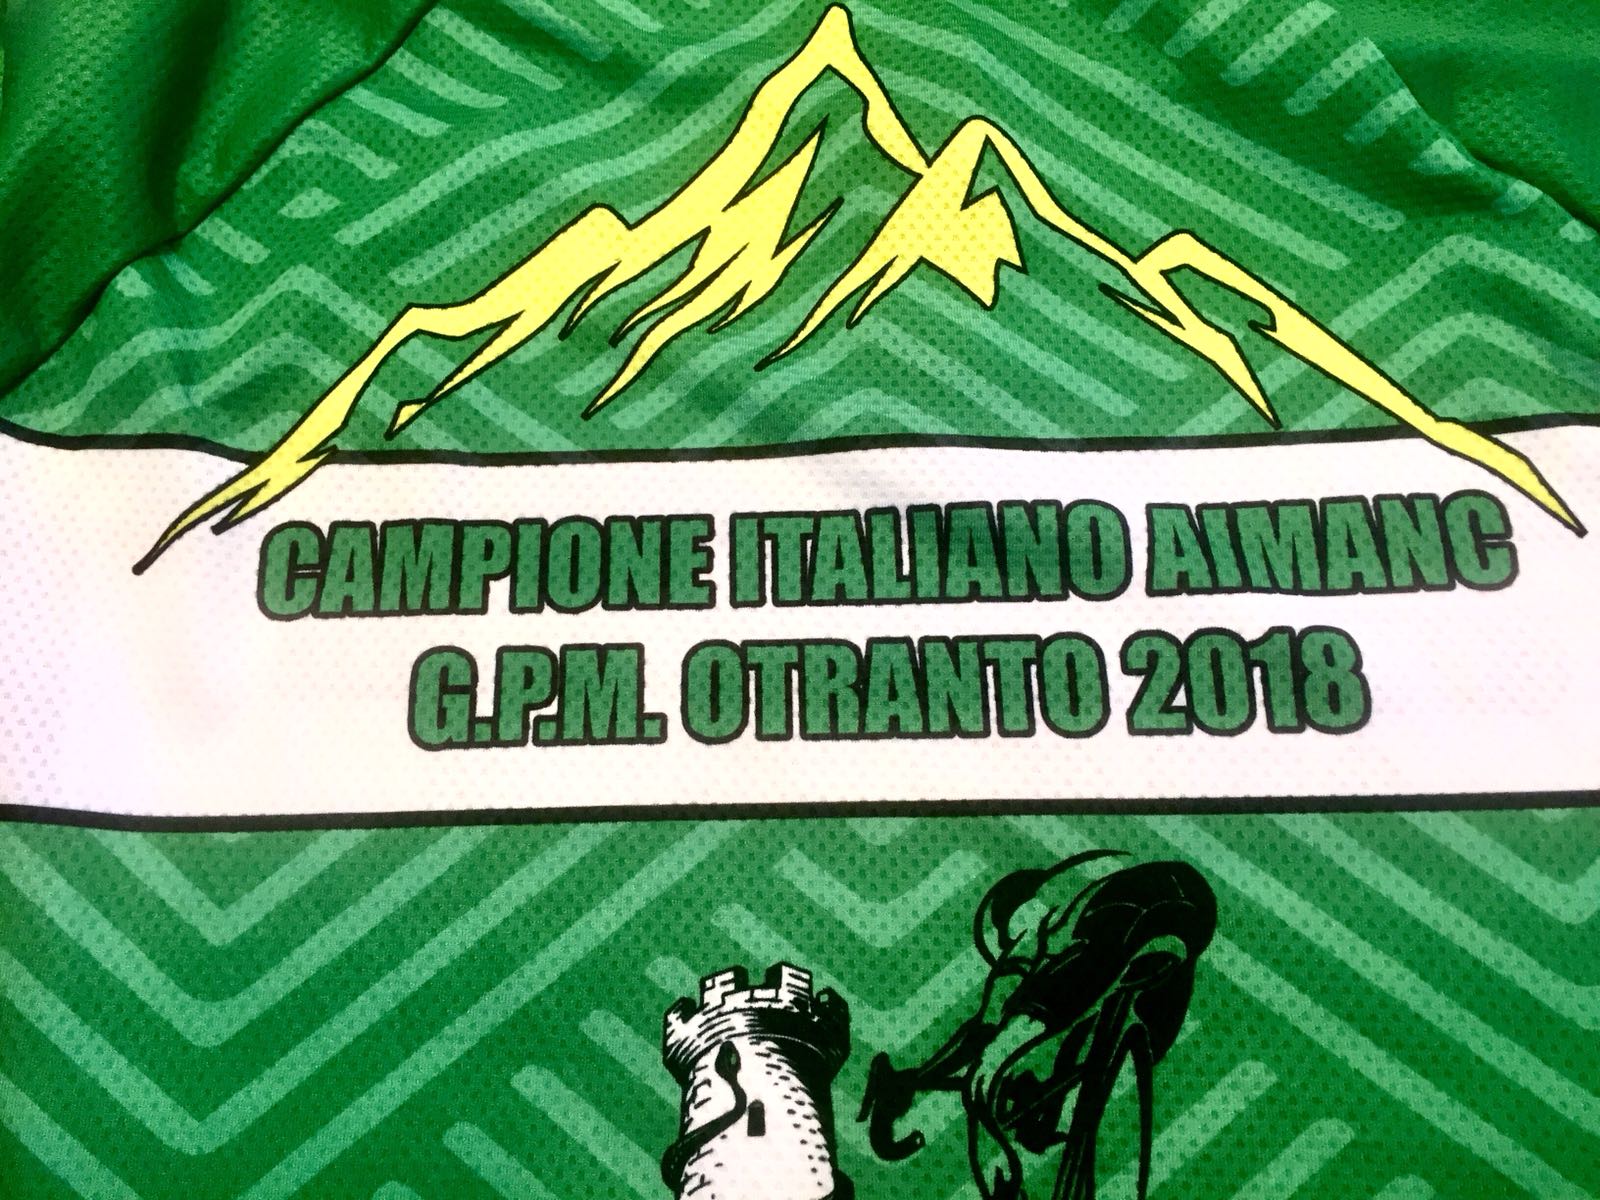 Maglia celebrativa per la vittoria in due categorie diverse, campione italiano Aimanc e G.p.m. - Vincenzo Donativi Campione italiano Aimanc 2018